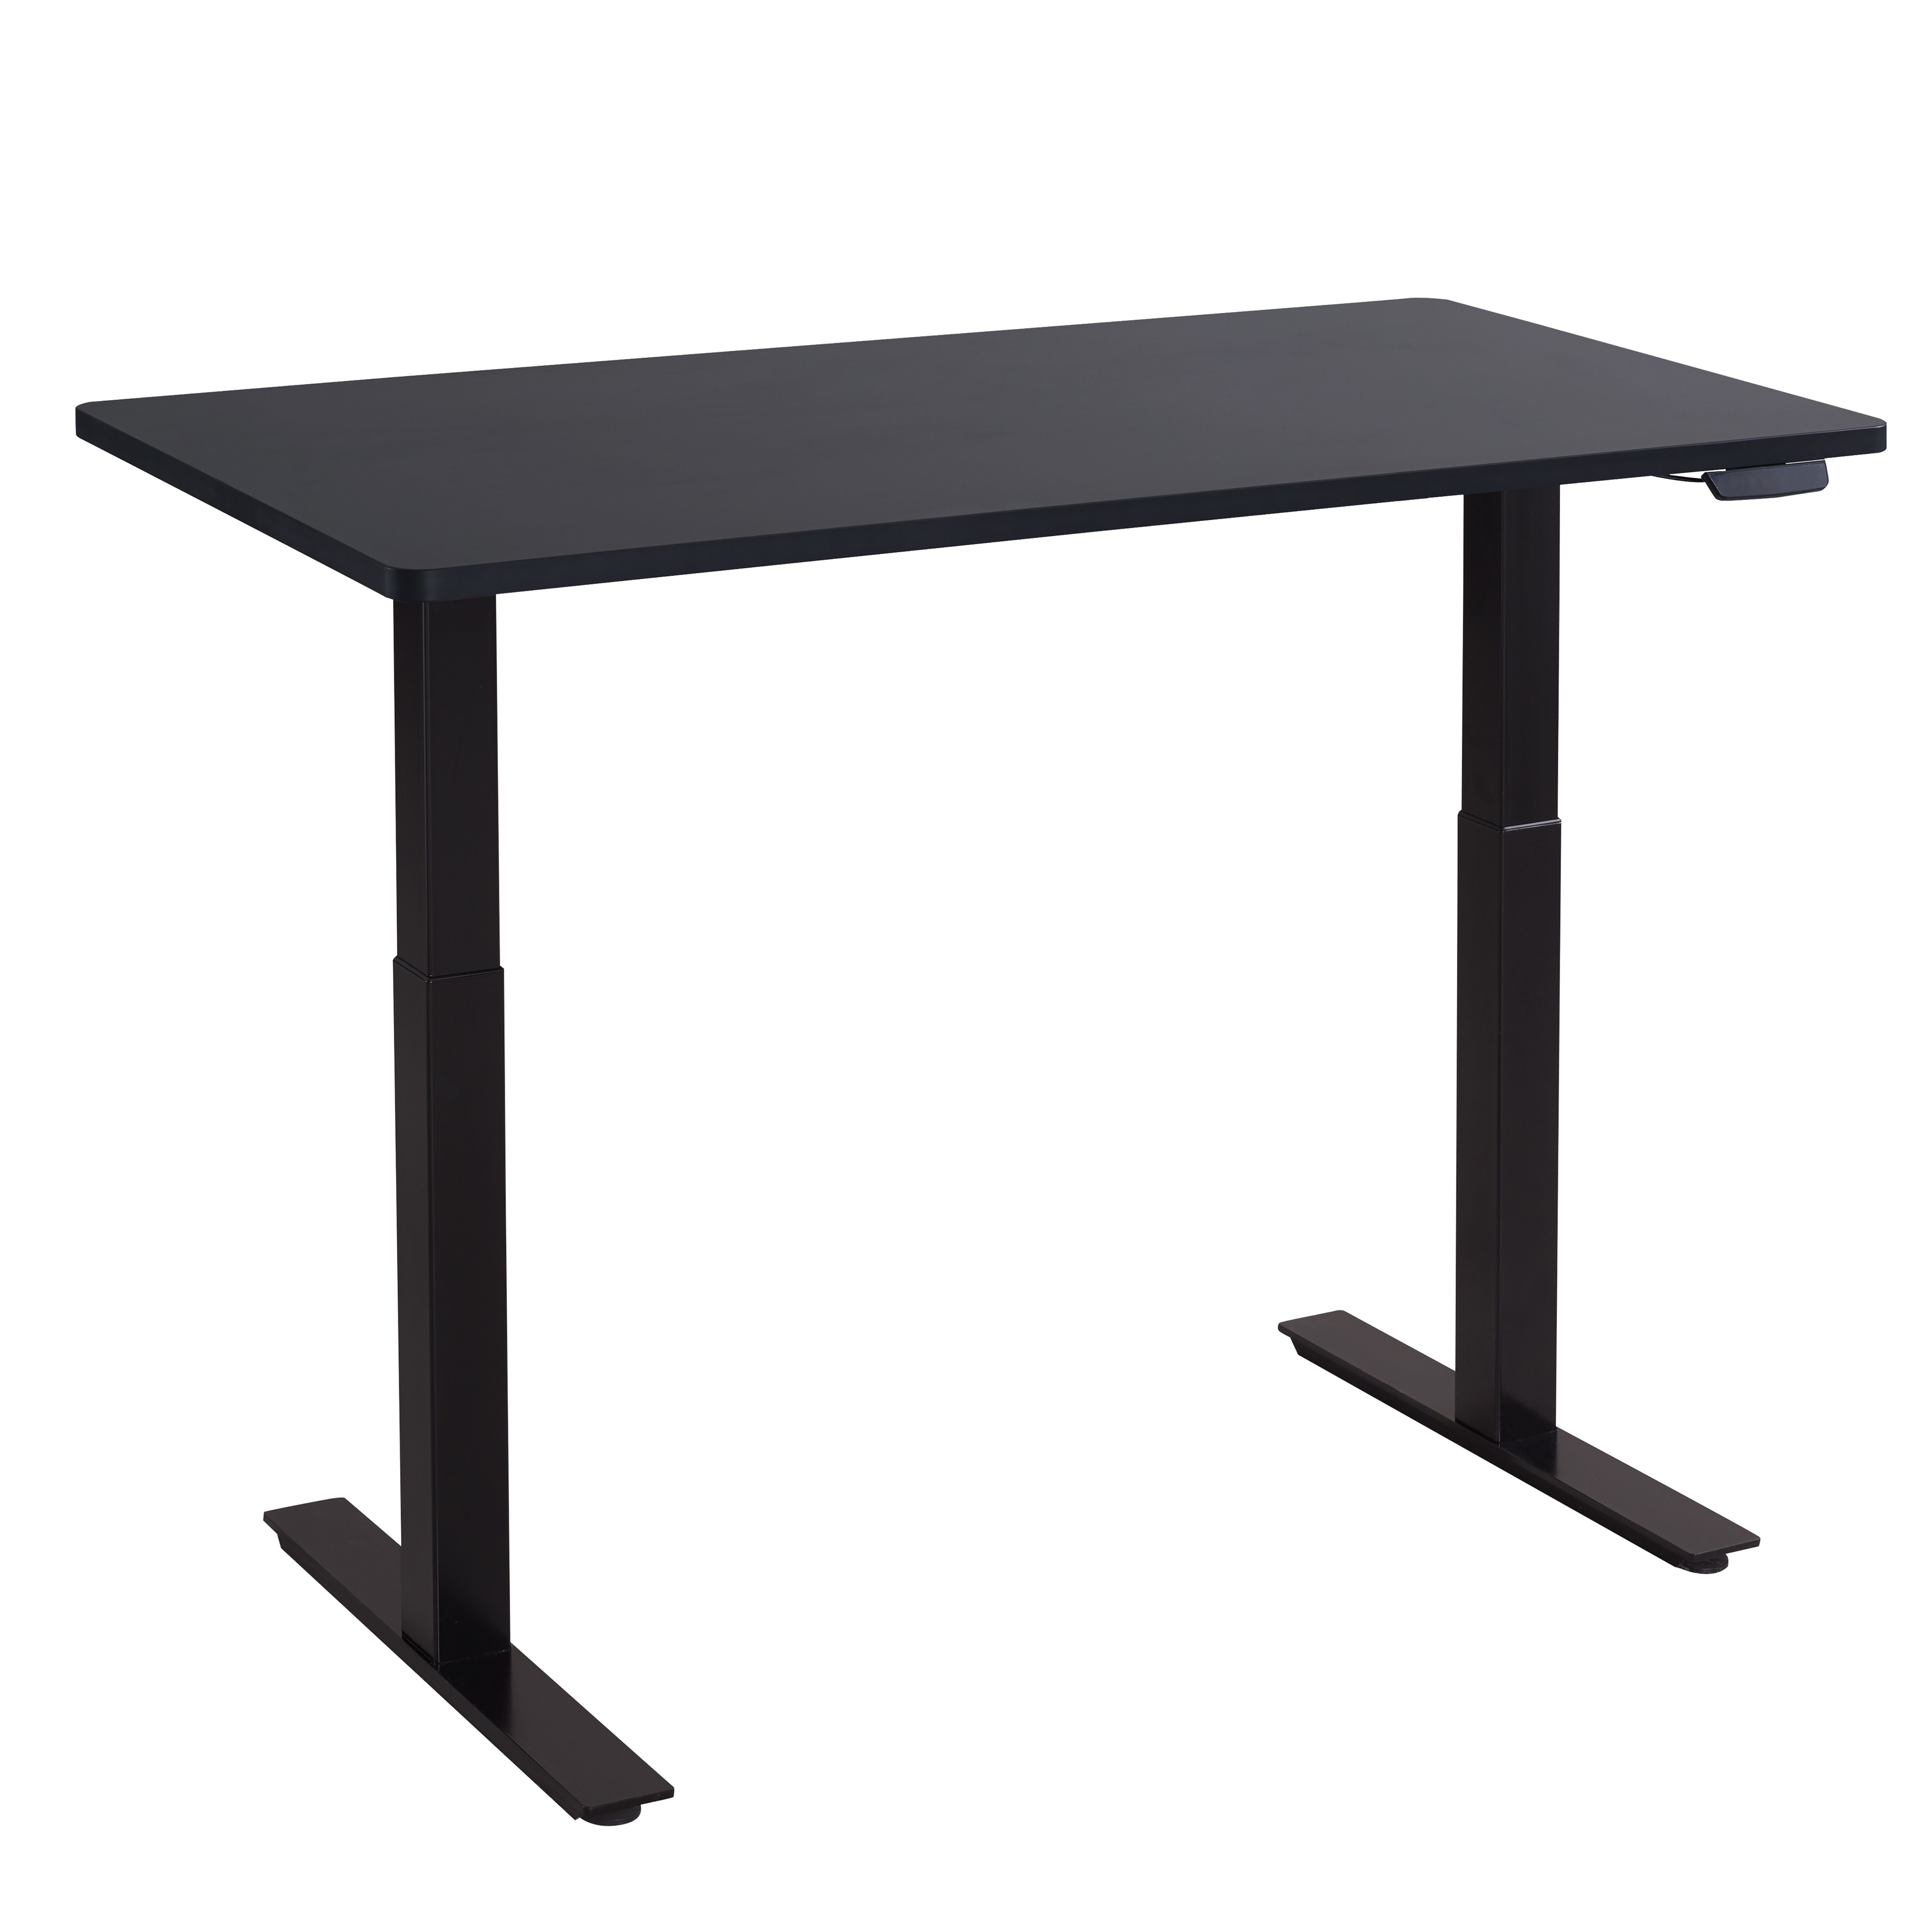 Balderia Schreibtisch, Höhenverstellbarer Schreibtisch Elektrisch -  Verstellbares Tischgestell inkl. Tischplatte 120 x 60 cm - Höhe 68-118 cm -  Schwarz online kaufen | OTTO